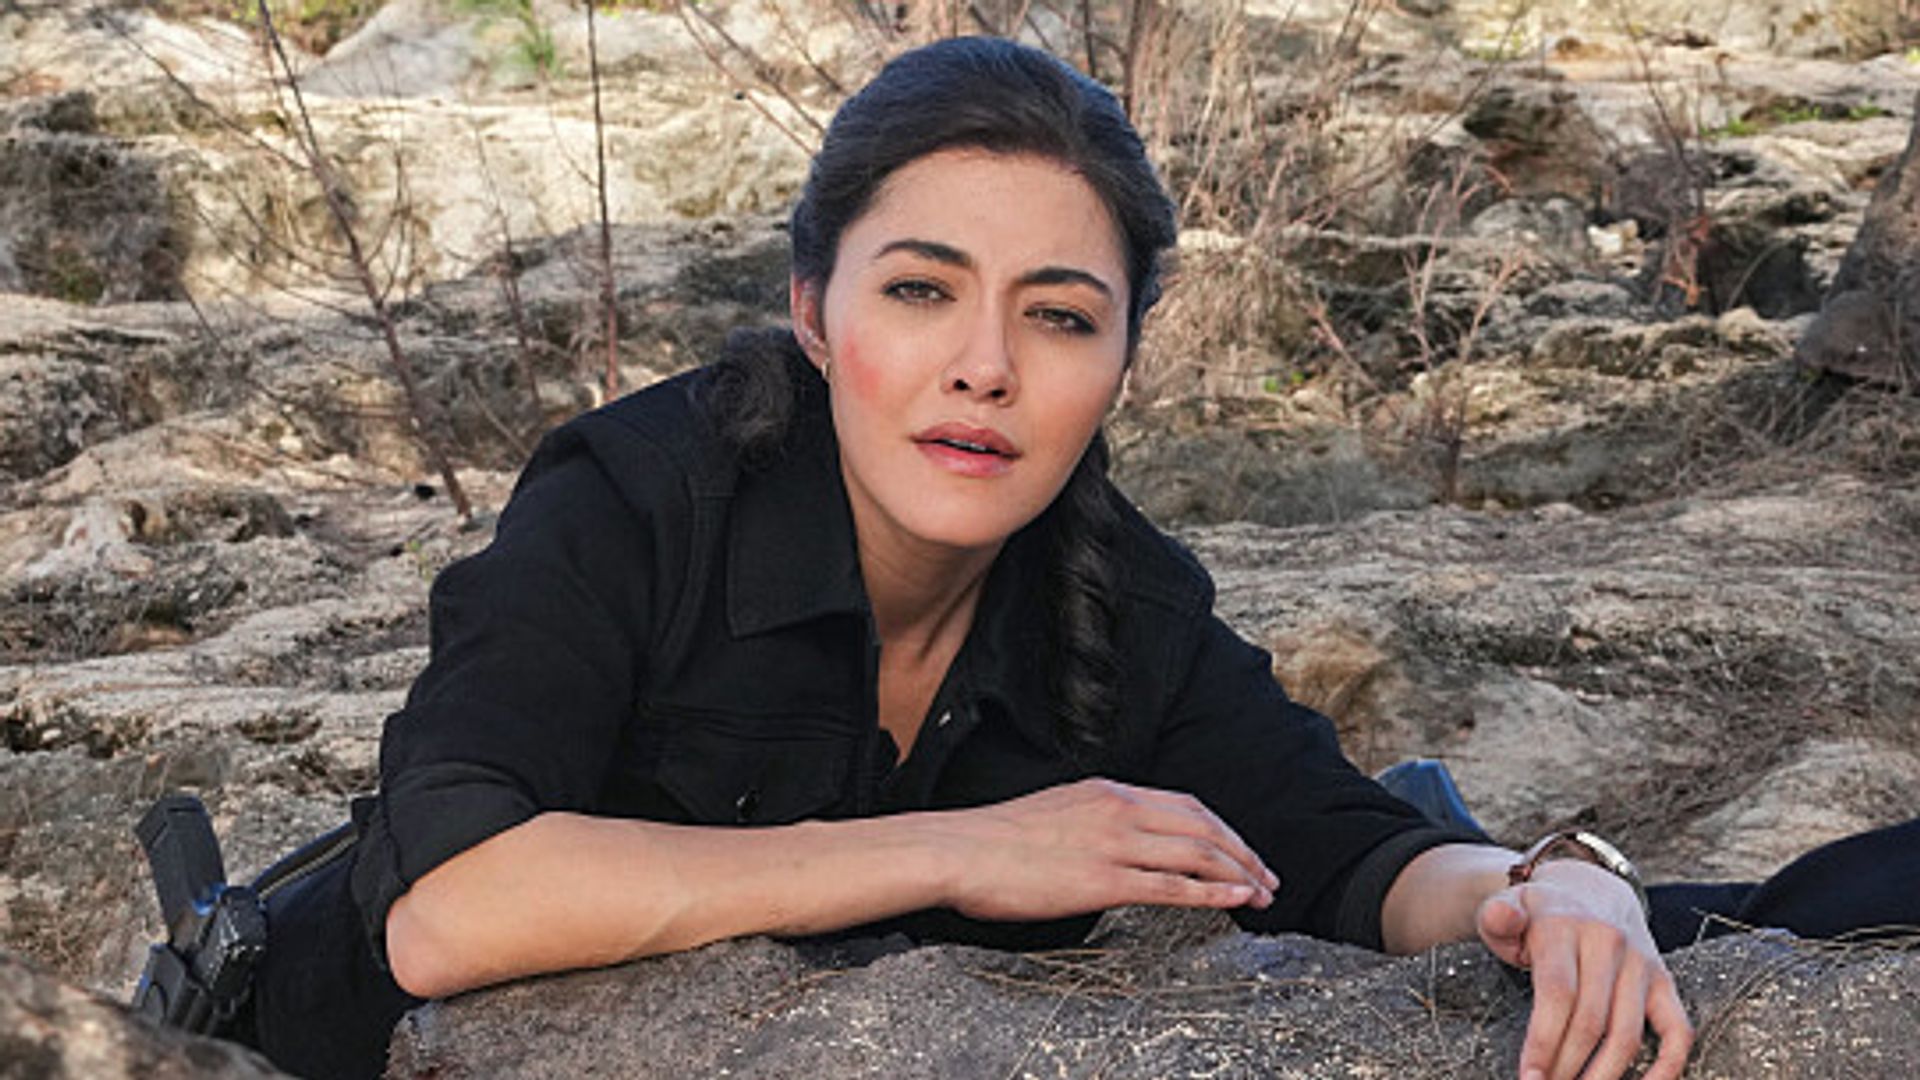 Yasmine Al-Bustami as Lucy Tara in NCIS: Hawai'i